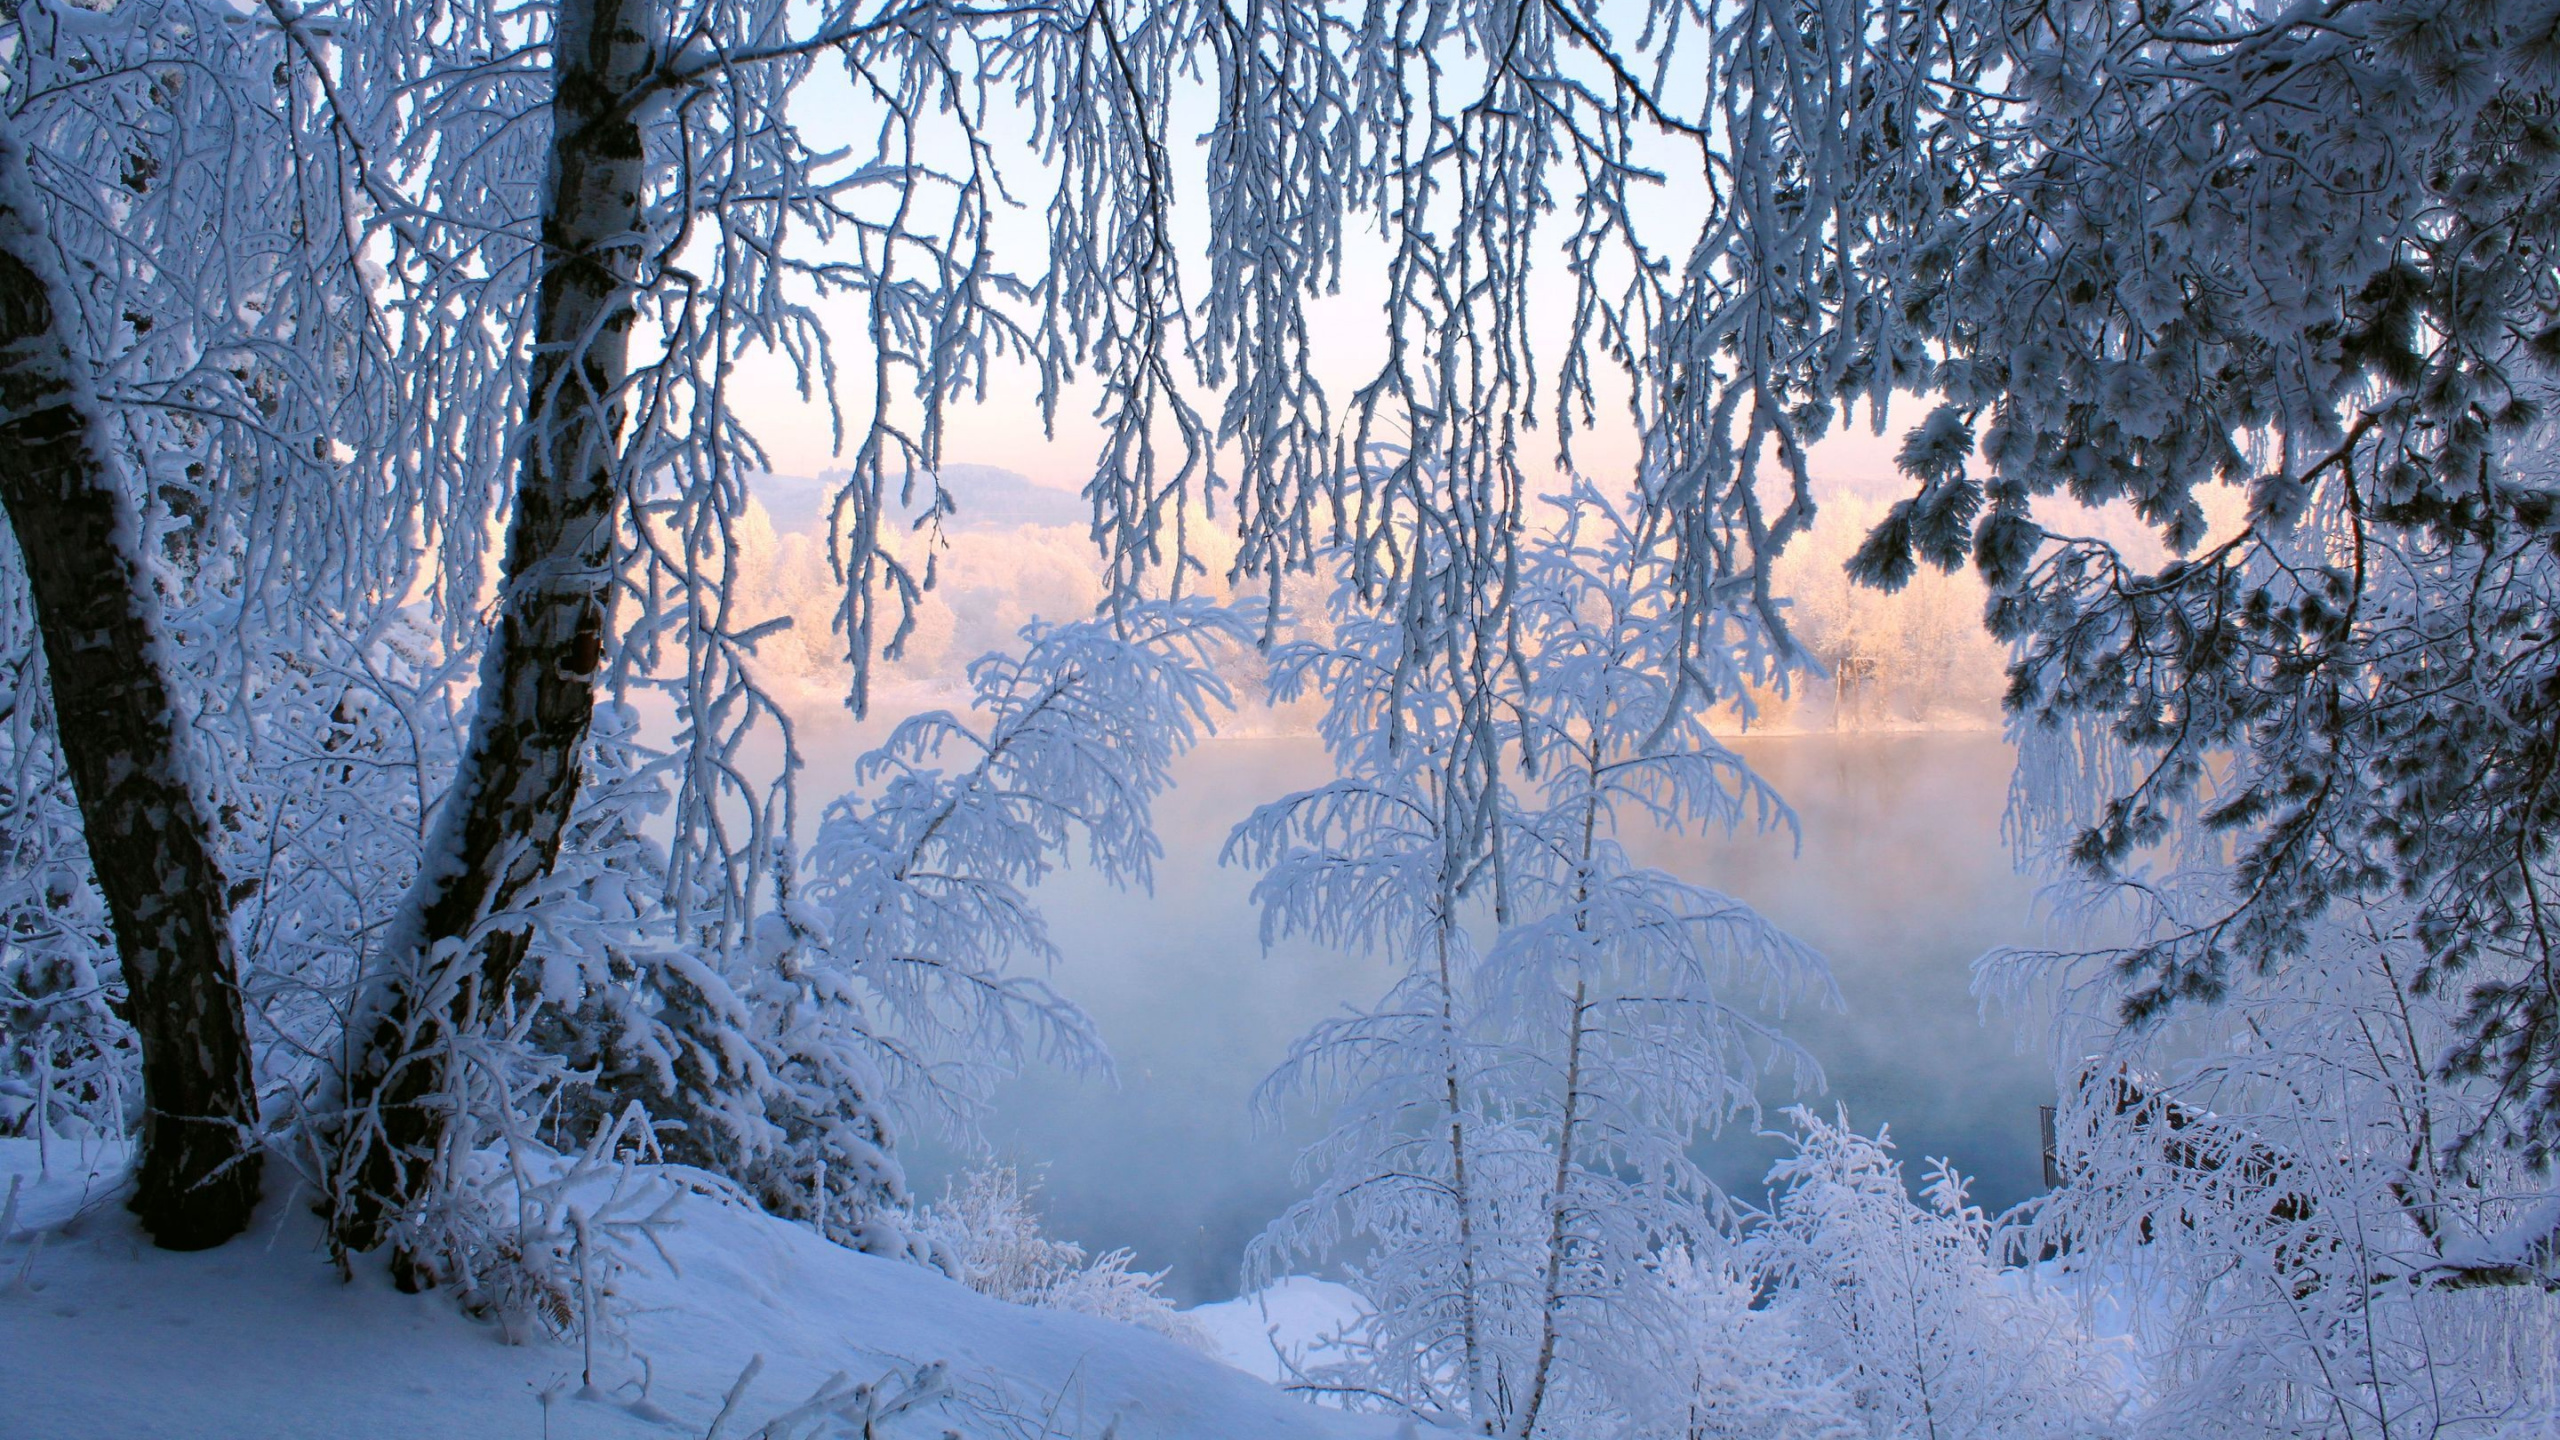 冬天, 性质, 冻结, 林地, 森林 壁纸 2560x1440 允许